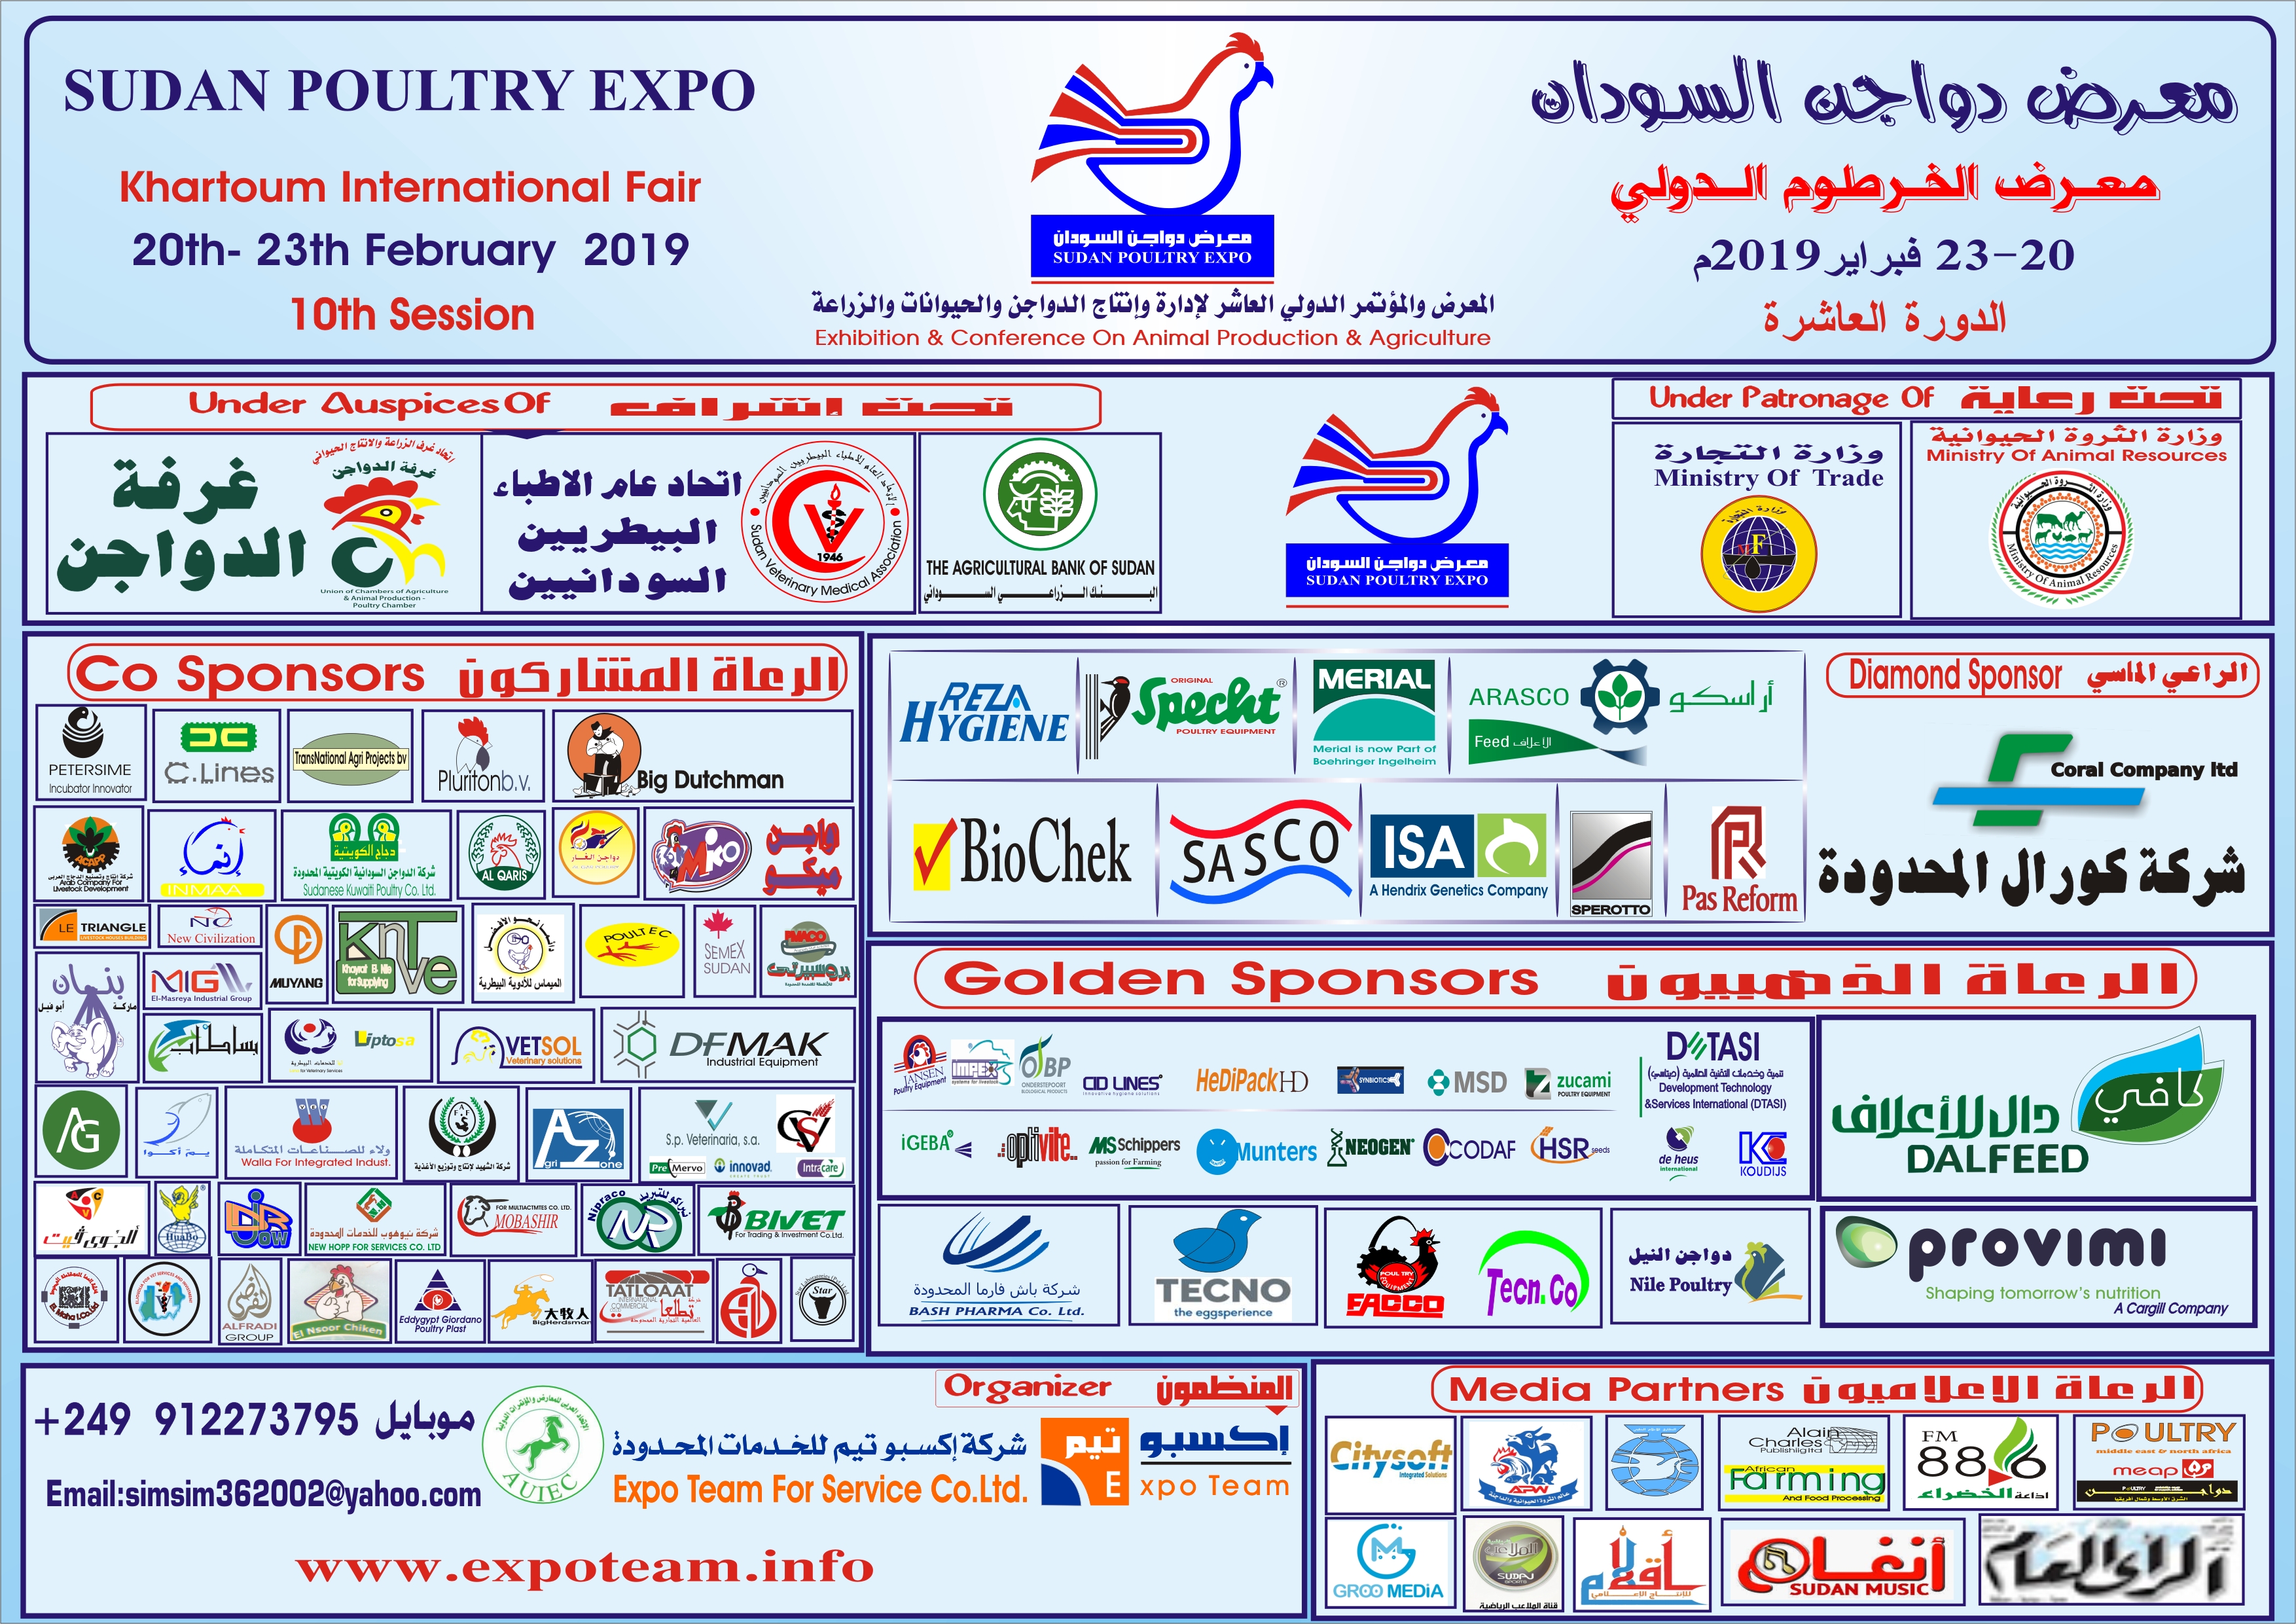 Sudan Exhibition